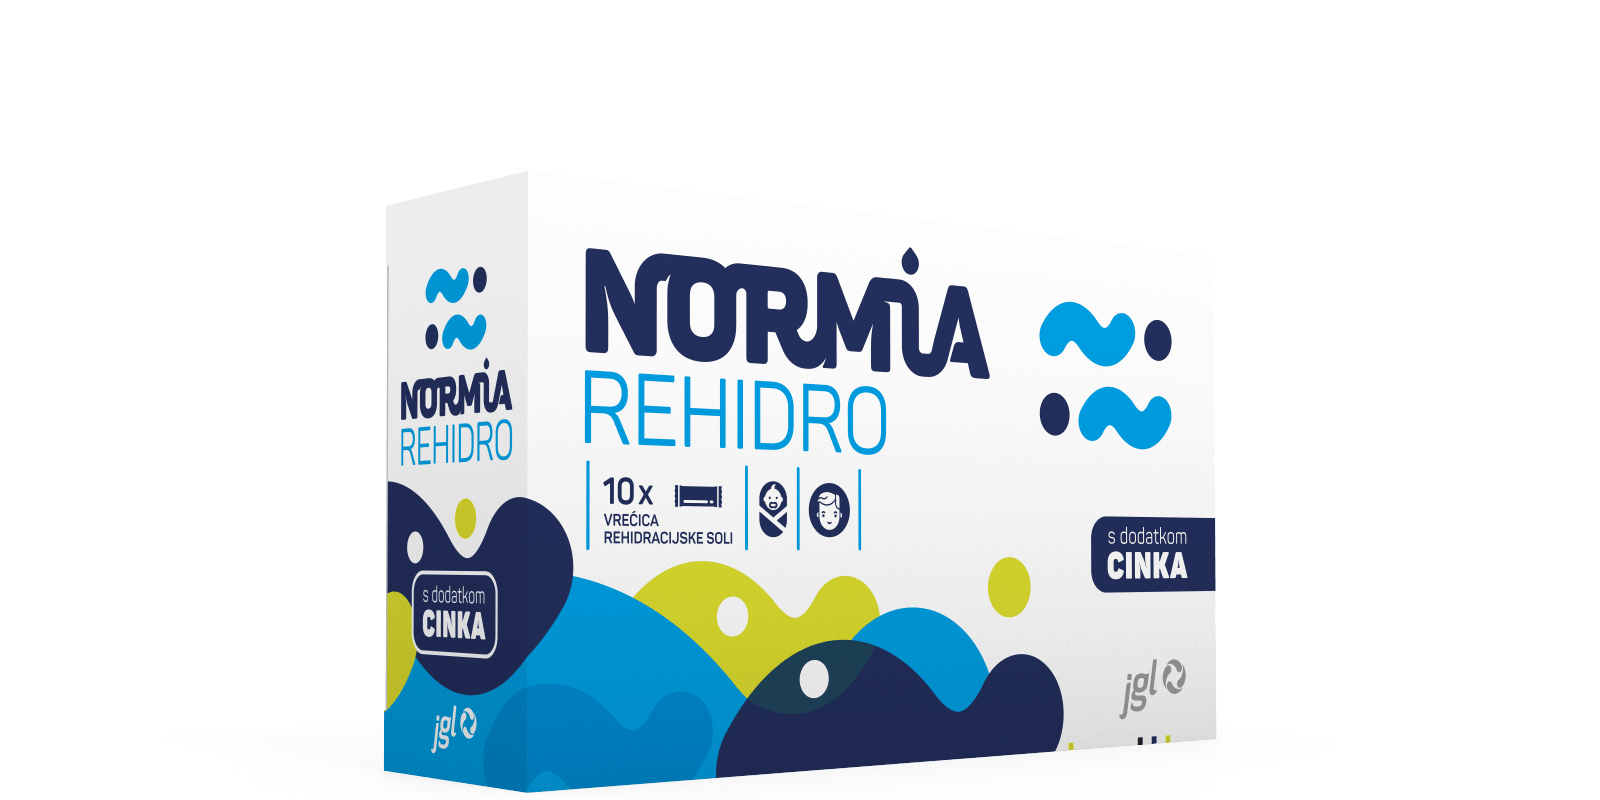 Normia REHIDRO - Sprječava dehidraciju i nadoknađuje elektrolite